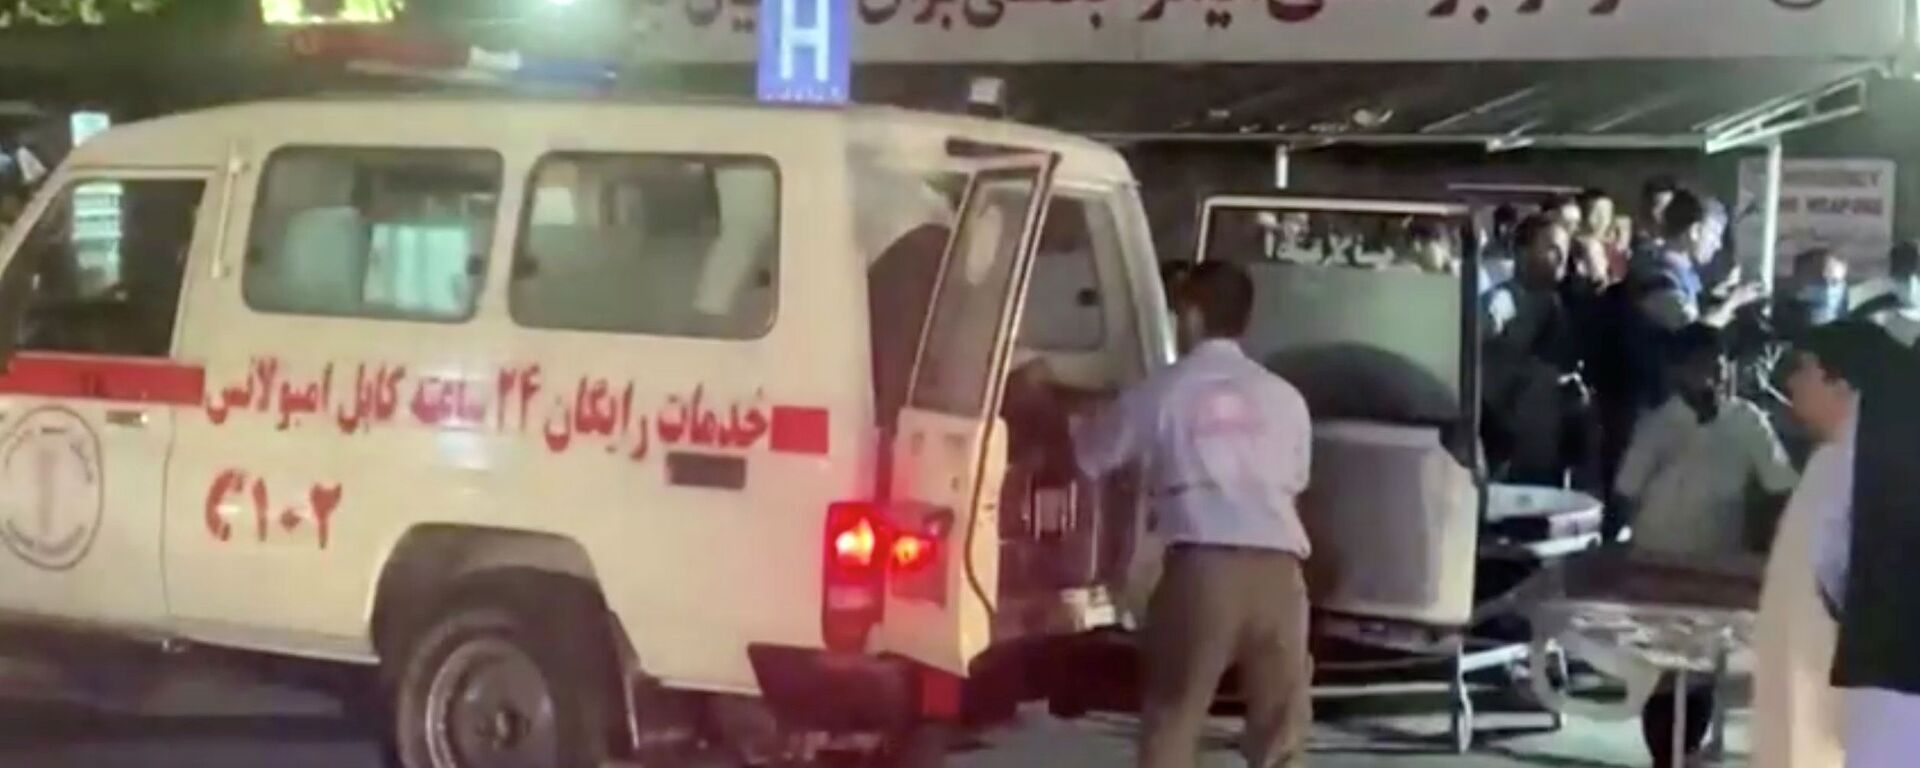 Автомобиль скорой помощи доставляет пострадавших в больницу после нападения в аэропорту Кабула (26 августа 2021). Афганистан - Sputnik Армения, 1920, 27.08.2021